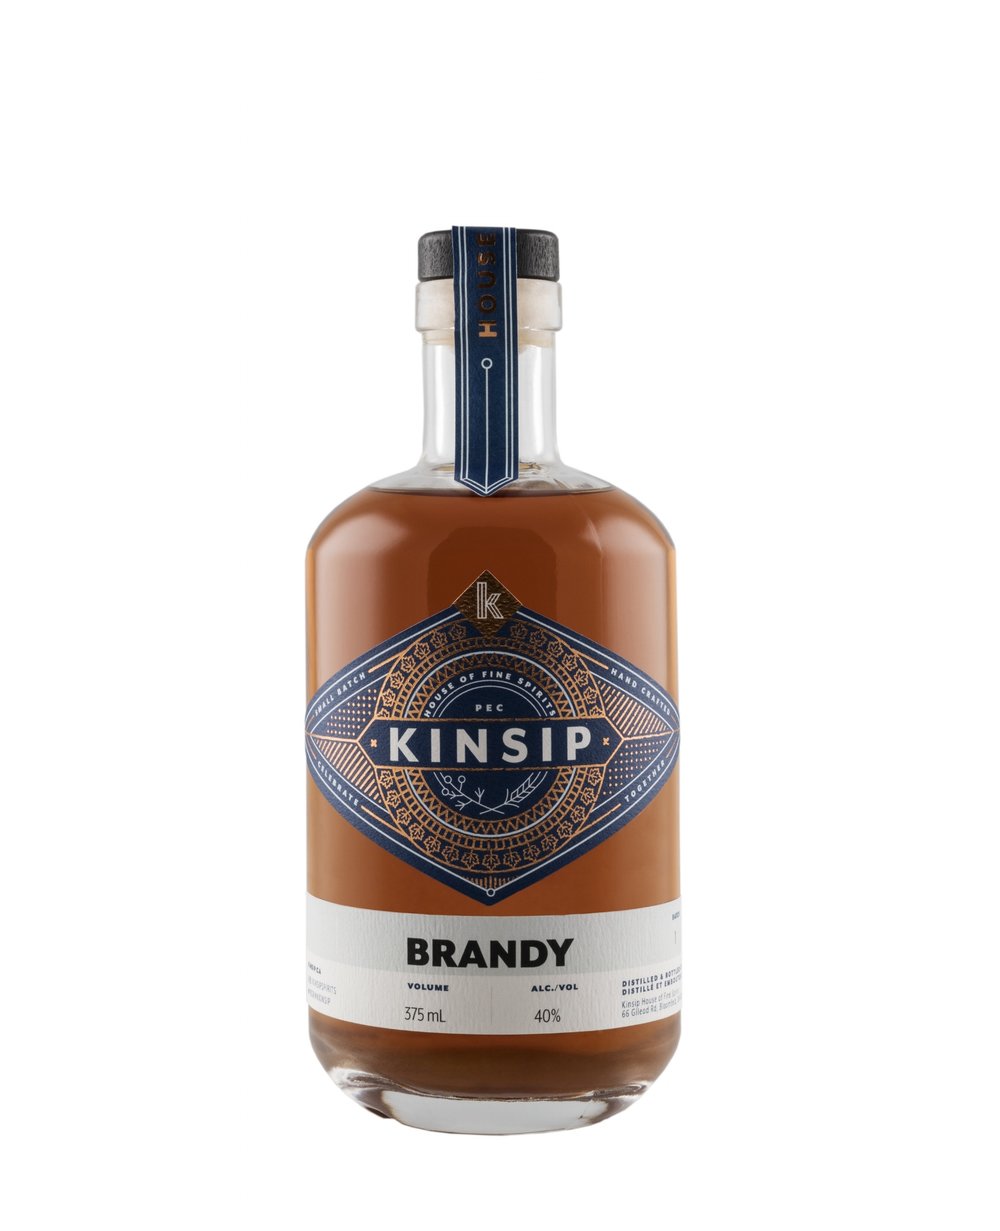 Kinsip Brandy